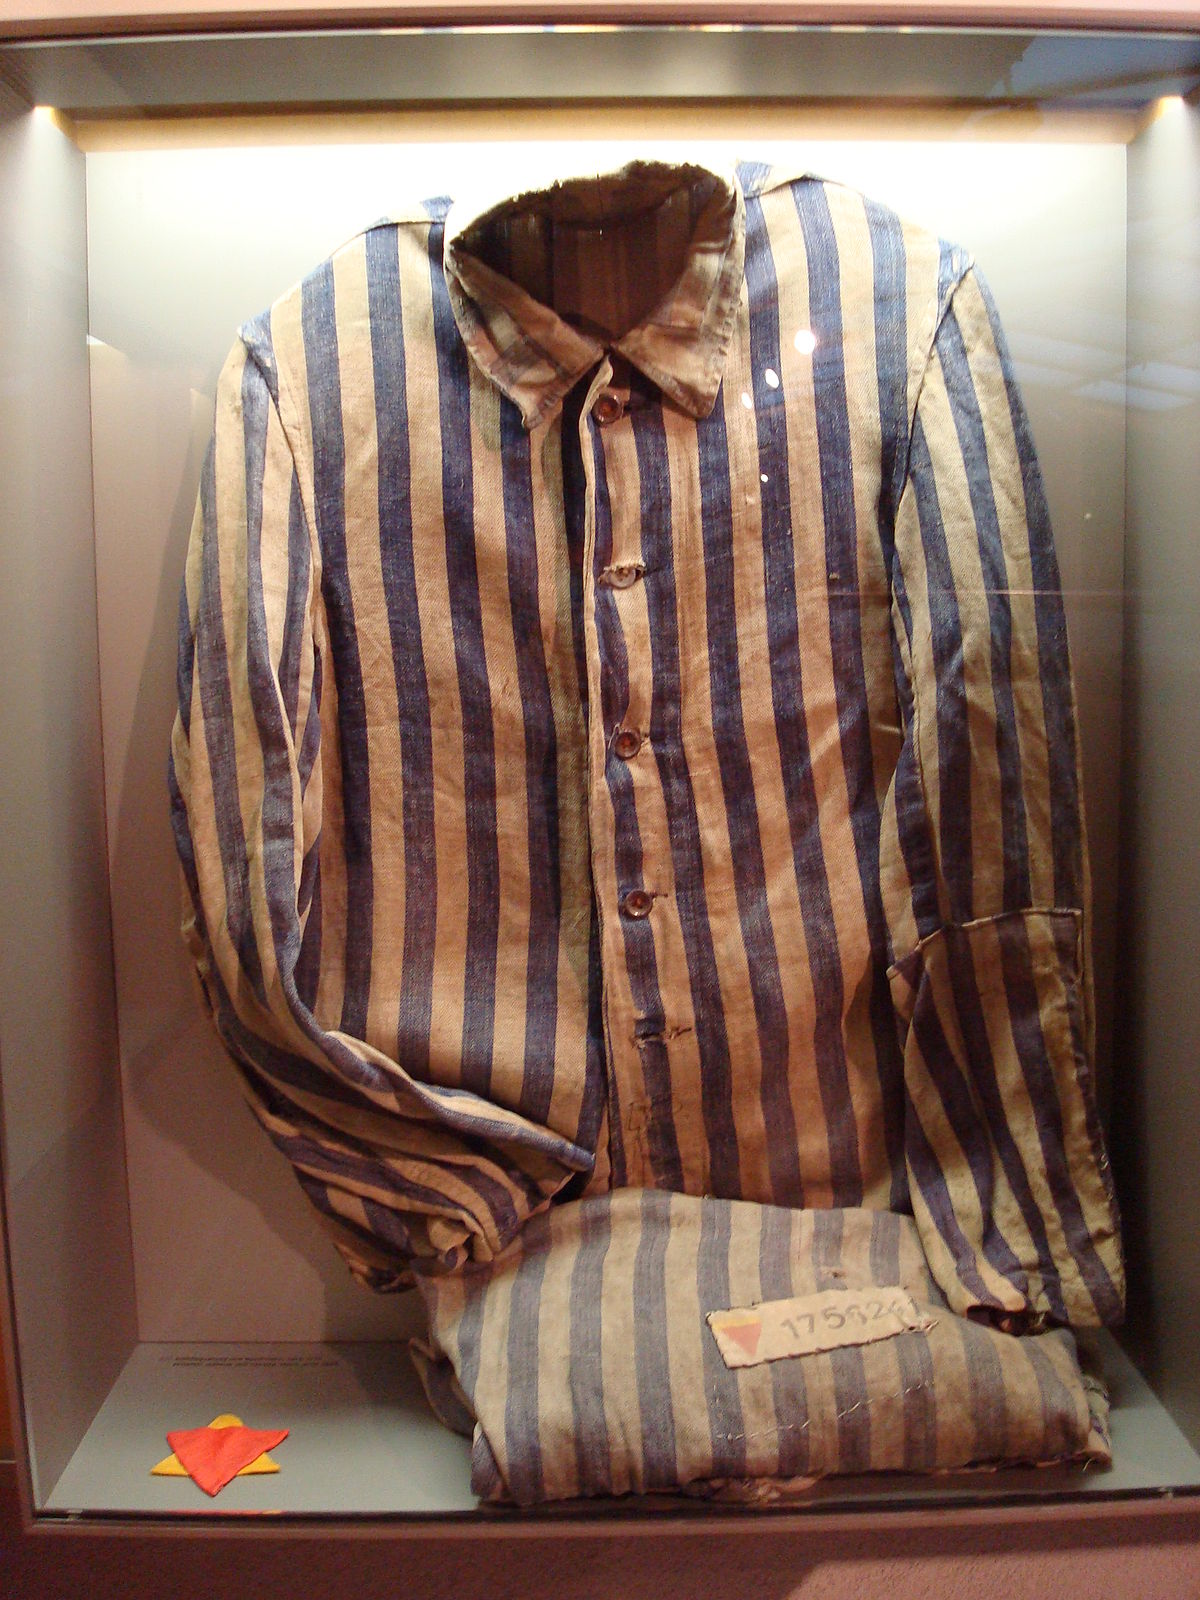 El niño con el pijama de rayas - Wikipedia, la enciclopedia libre